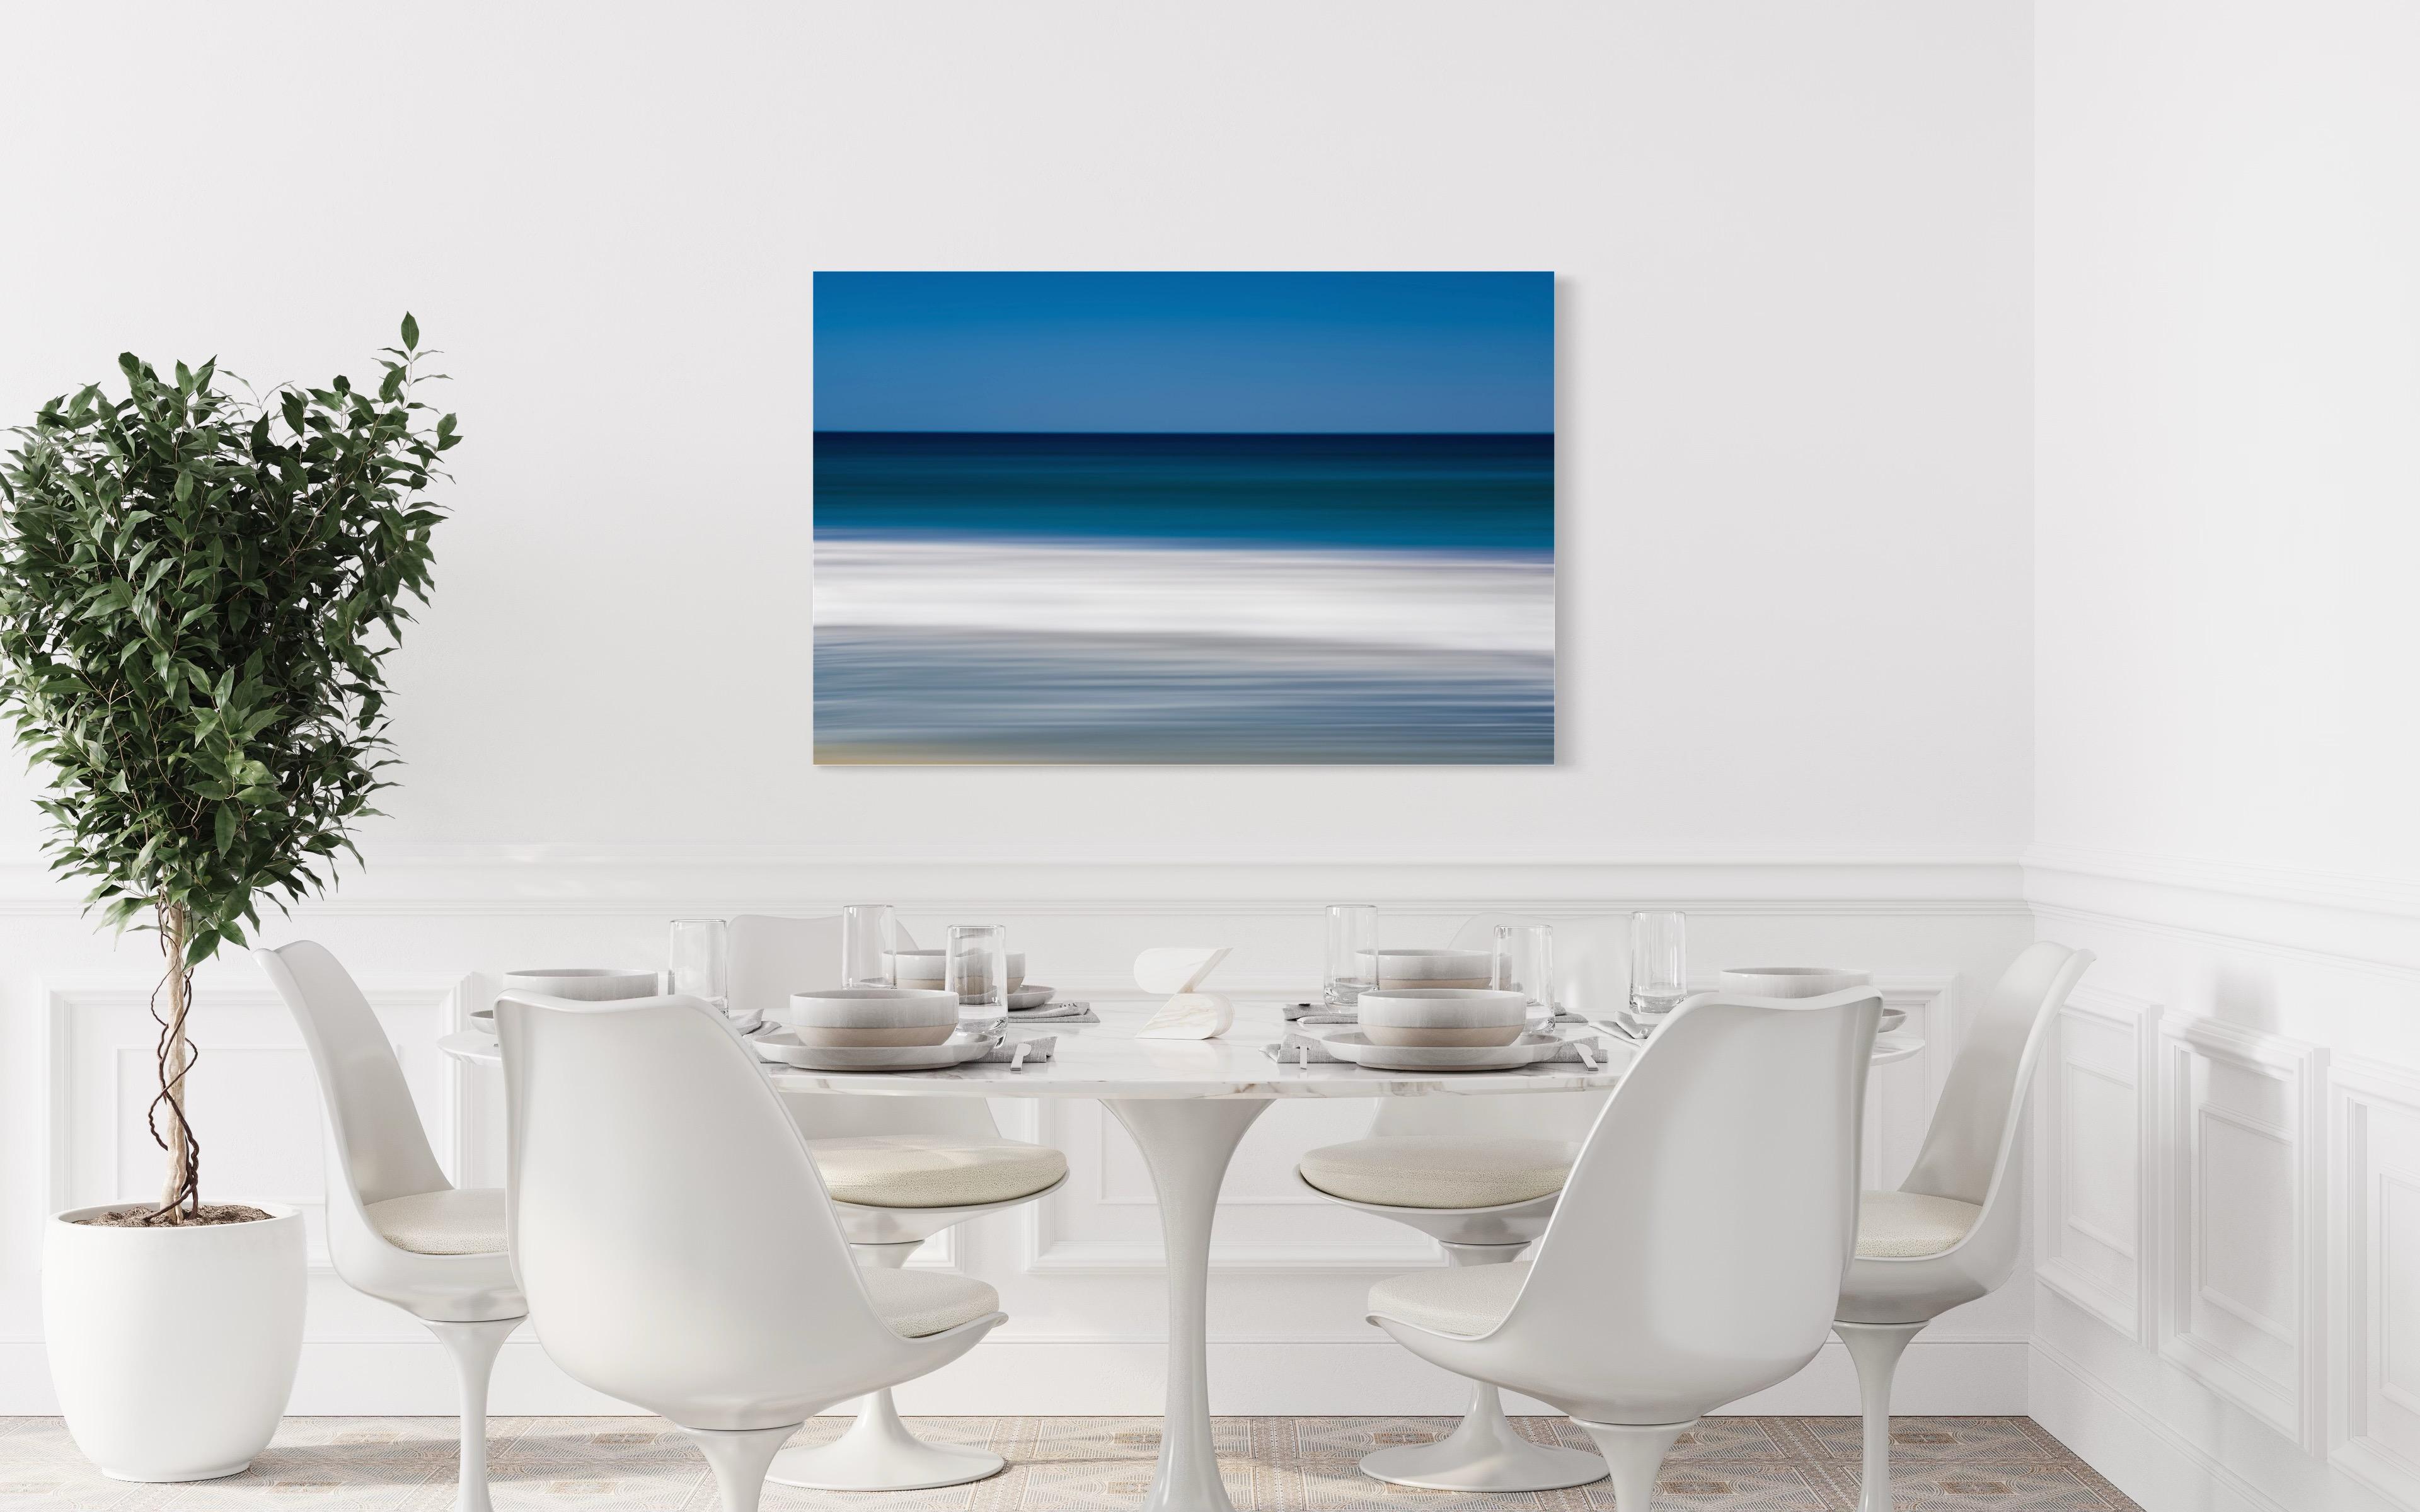 Cette photographie de Tori Gagne présente une composition de paysage abstraite et une palette côtière bleue et blanche. Cette photographie de Tori Gagne, éditée à 25 exemplaires, est disponible sous forme d'impression par sublimation métallique avec